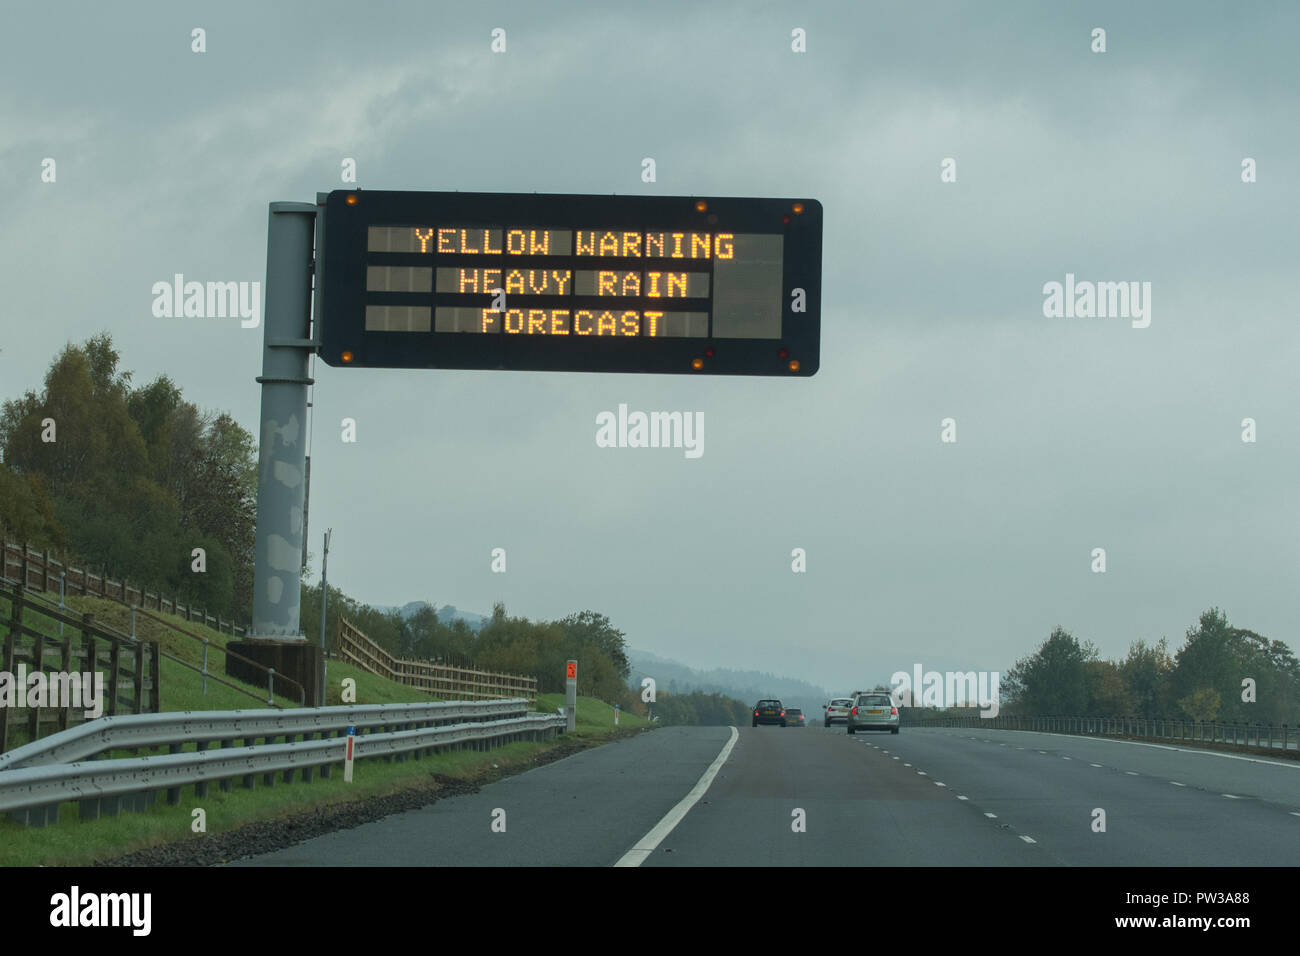 Gelbe Warnlampe Schwere Regen Prognose Zeichen auf der Autobahn Schottland Großbritannien Stockfoto